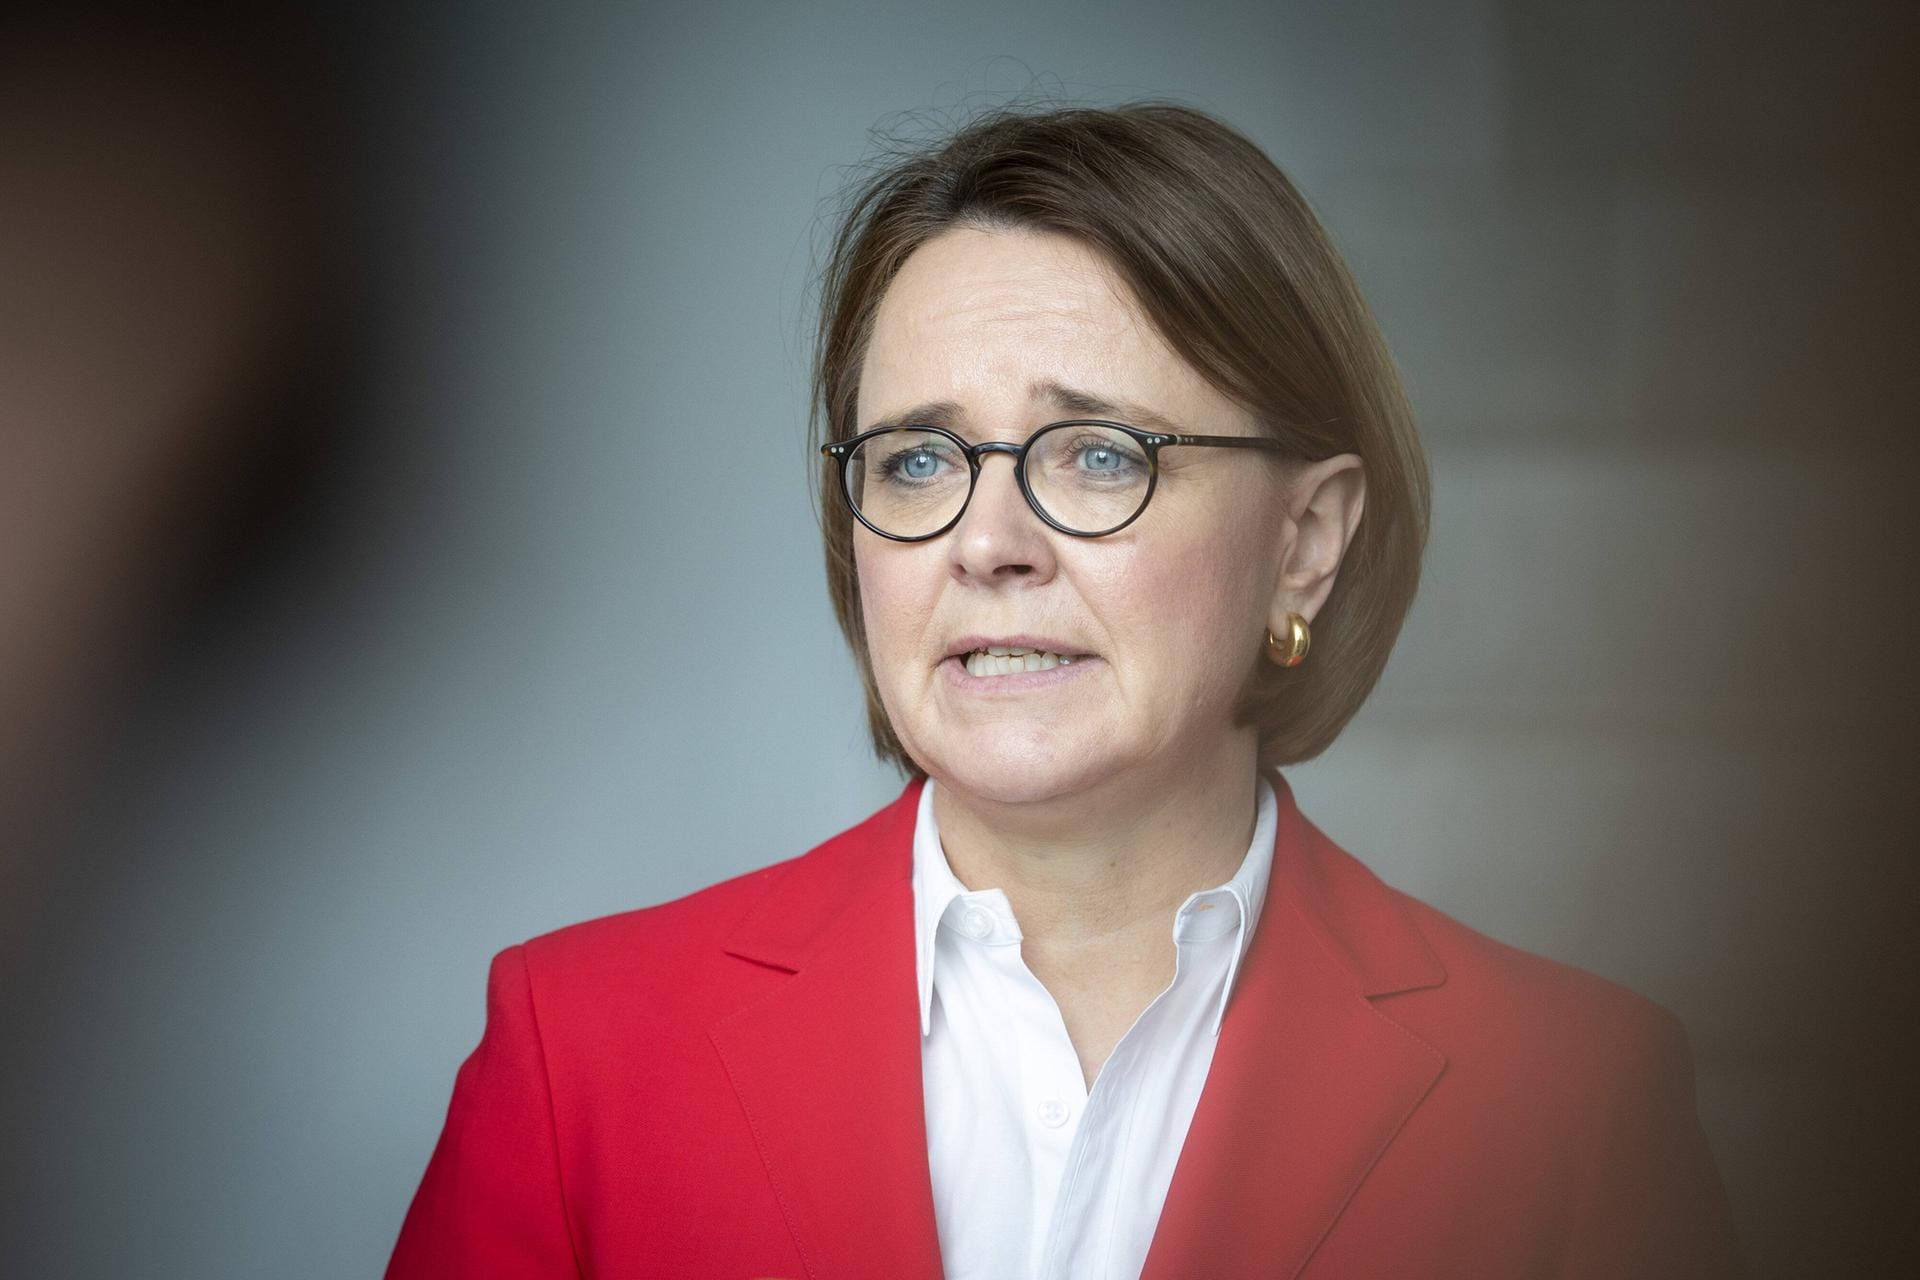 Die CDU-Politikerin und Migrationsbeauftragte Annette Widmann-Mauz schreibt auf Twitter: "Liebe Manuela Schwesig, ich wünsche Ihnen viel Kraft und gute ärztliche Betreuung, um den Krebs zu besiegen! Es ist richtig, sich die Zeit zu nehmen, die Sie brauchen, um wieder ganz gesund zu werden. Auch im politischen Alltag gibt es nichts, was wichtiger wäre."